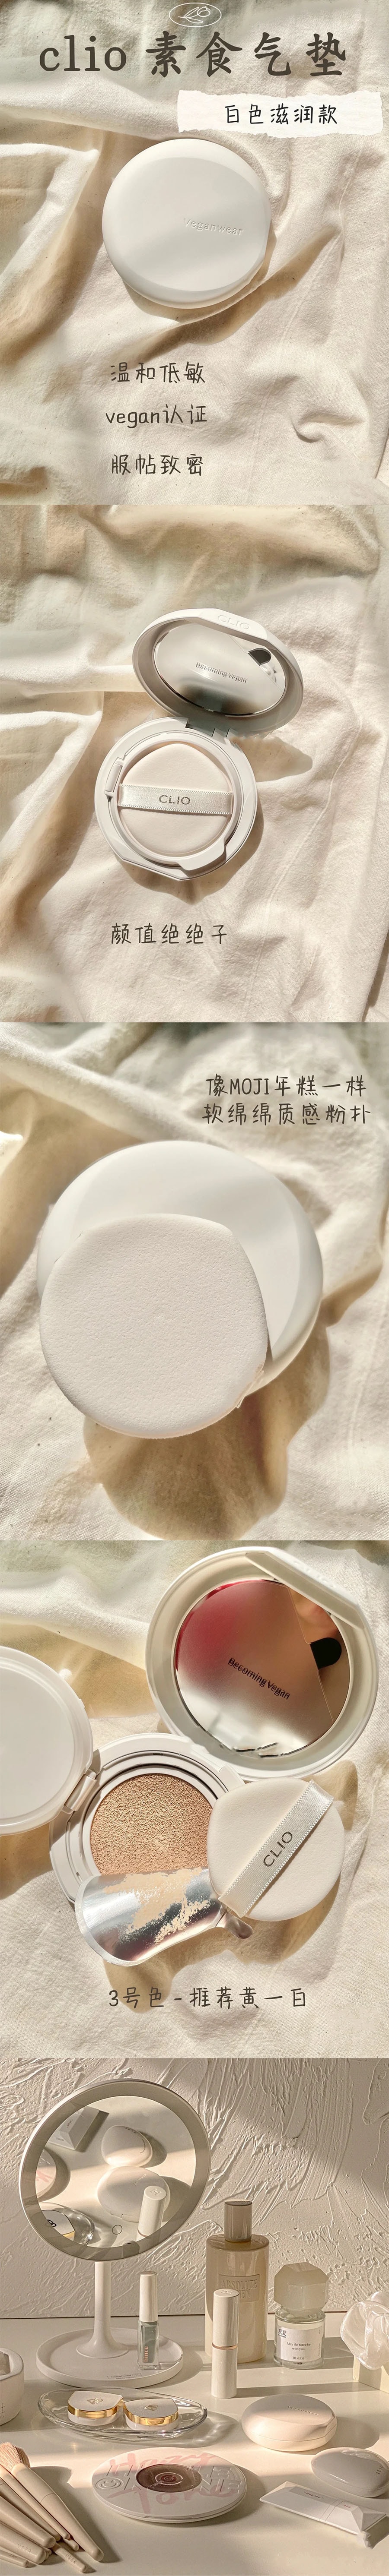 韩国 CLIO 珂莱欧 新款Veganwear素食主义水光气垫 #02 亮白色 15g*2 含替换芯.